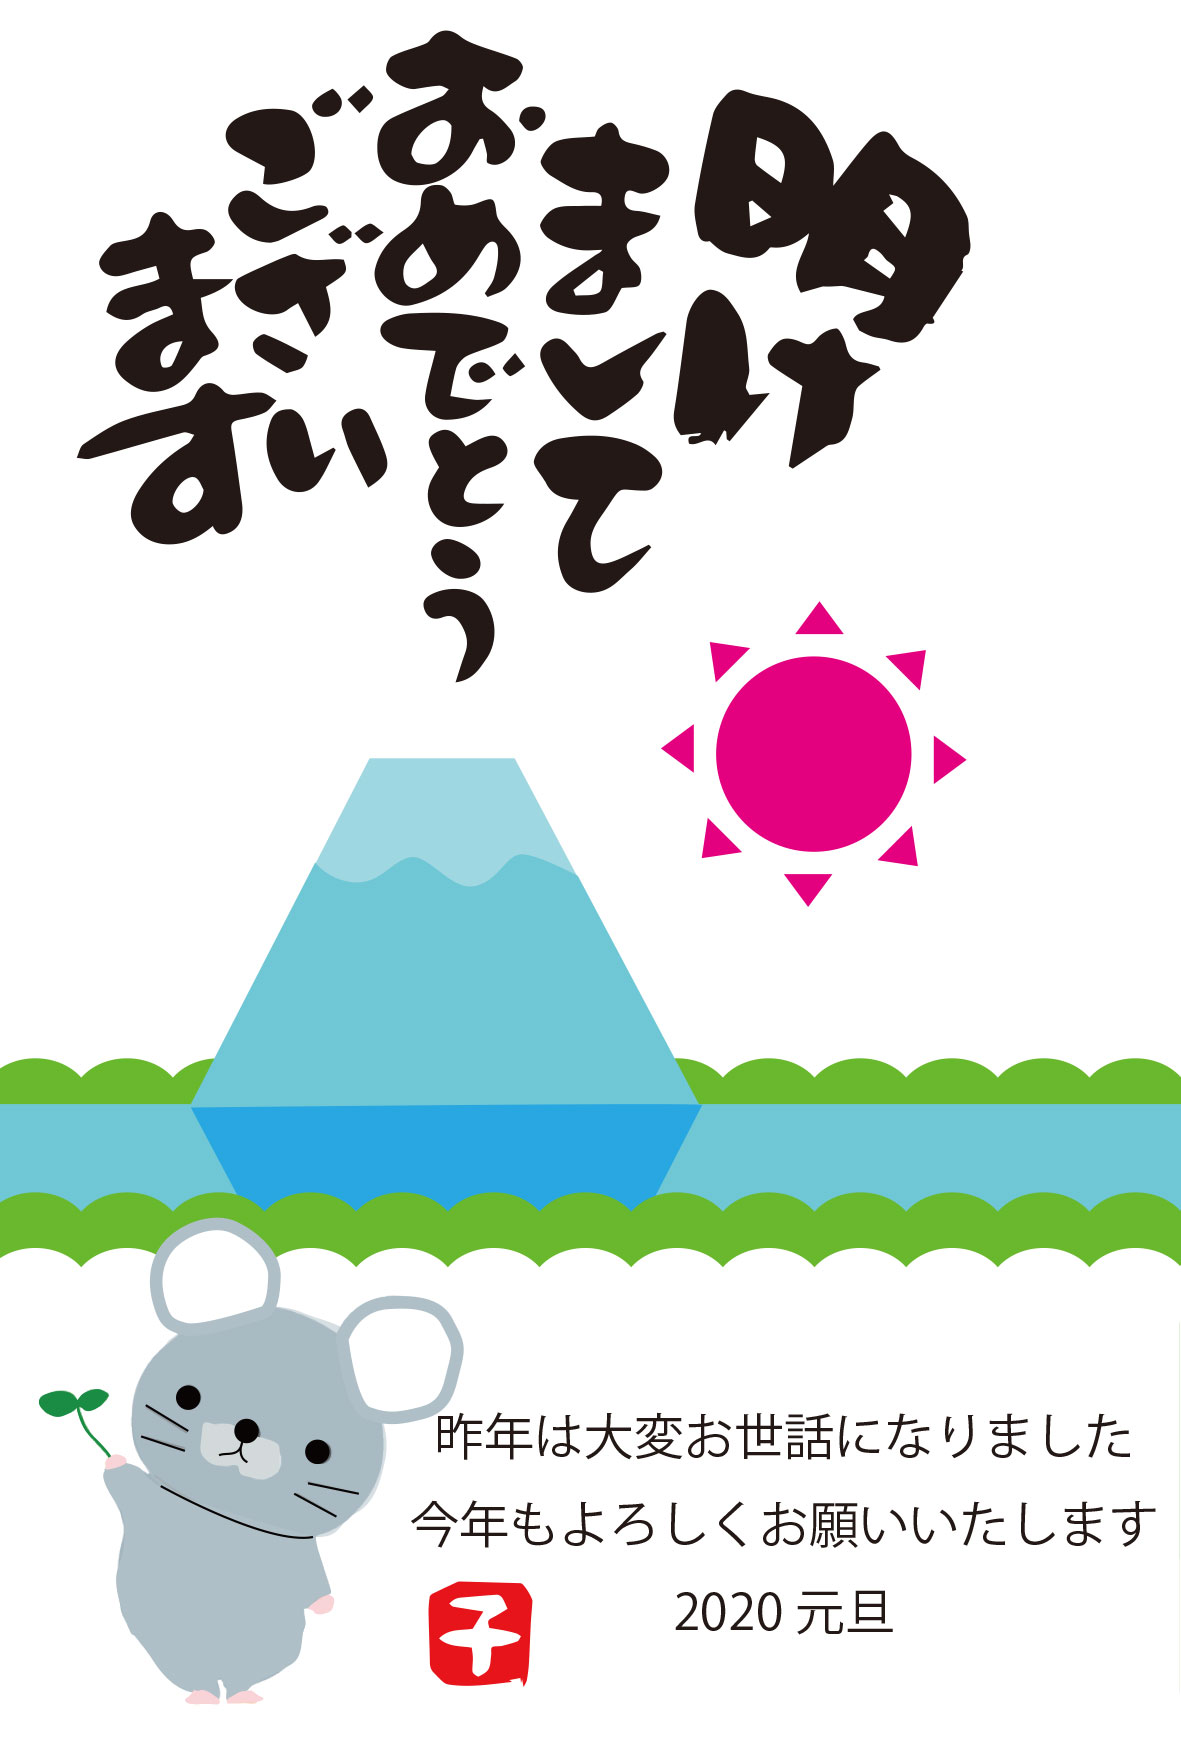 緑の葉を持ったかわいいネズミと富士山 初日の出の年賀状無料素材です 企業 ブランド等のロゴをillustrator Ai Eps形式 でトレース 無料ダウンロード